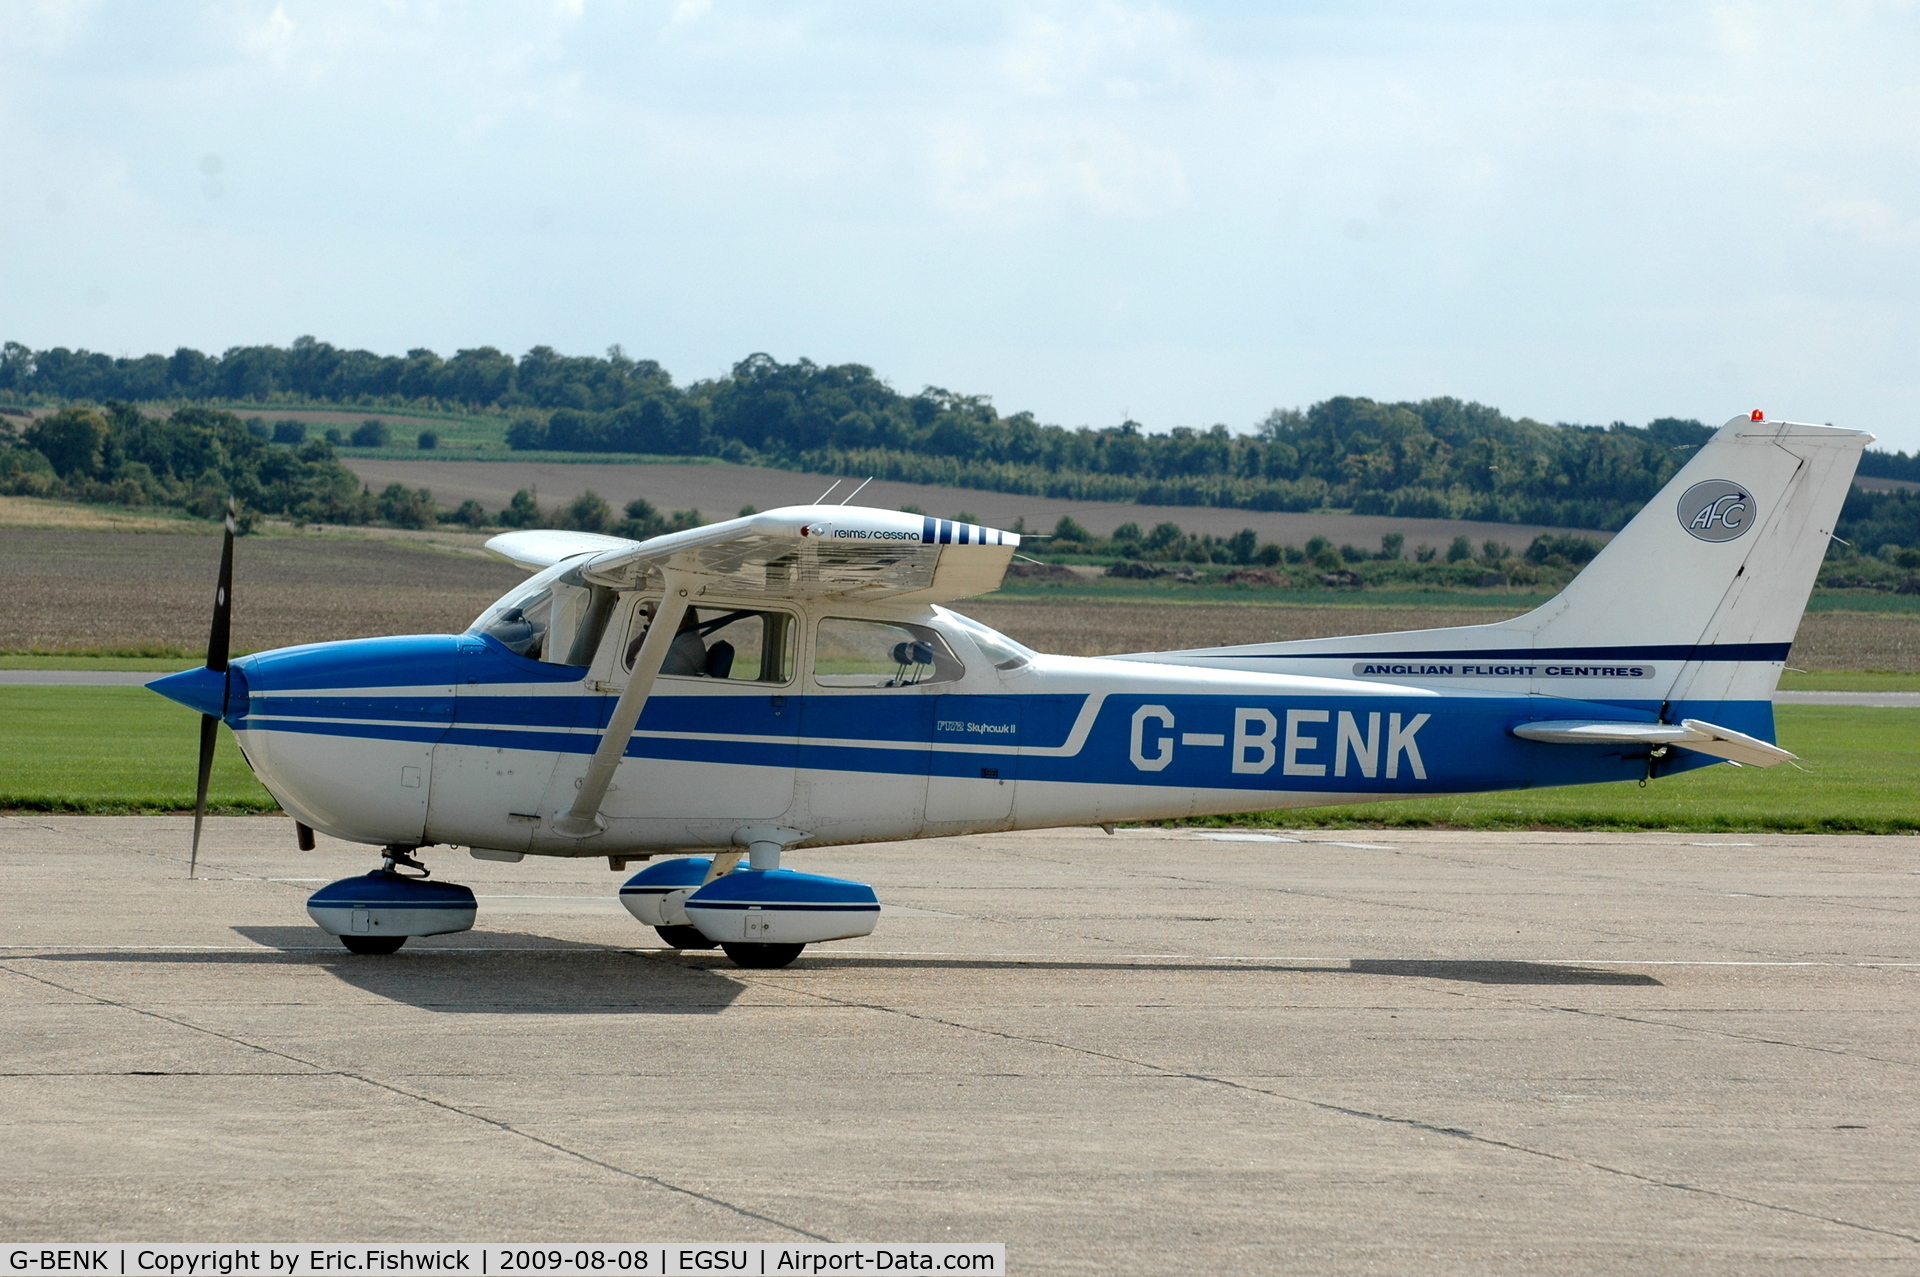 G-BENK, 1976 Reims F172M ll Skyhawk C/N 1509, G-BENK Cessna Skyhawk at Duxford